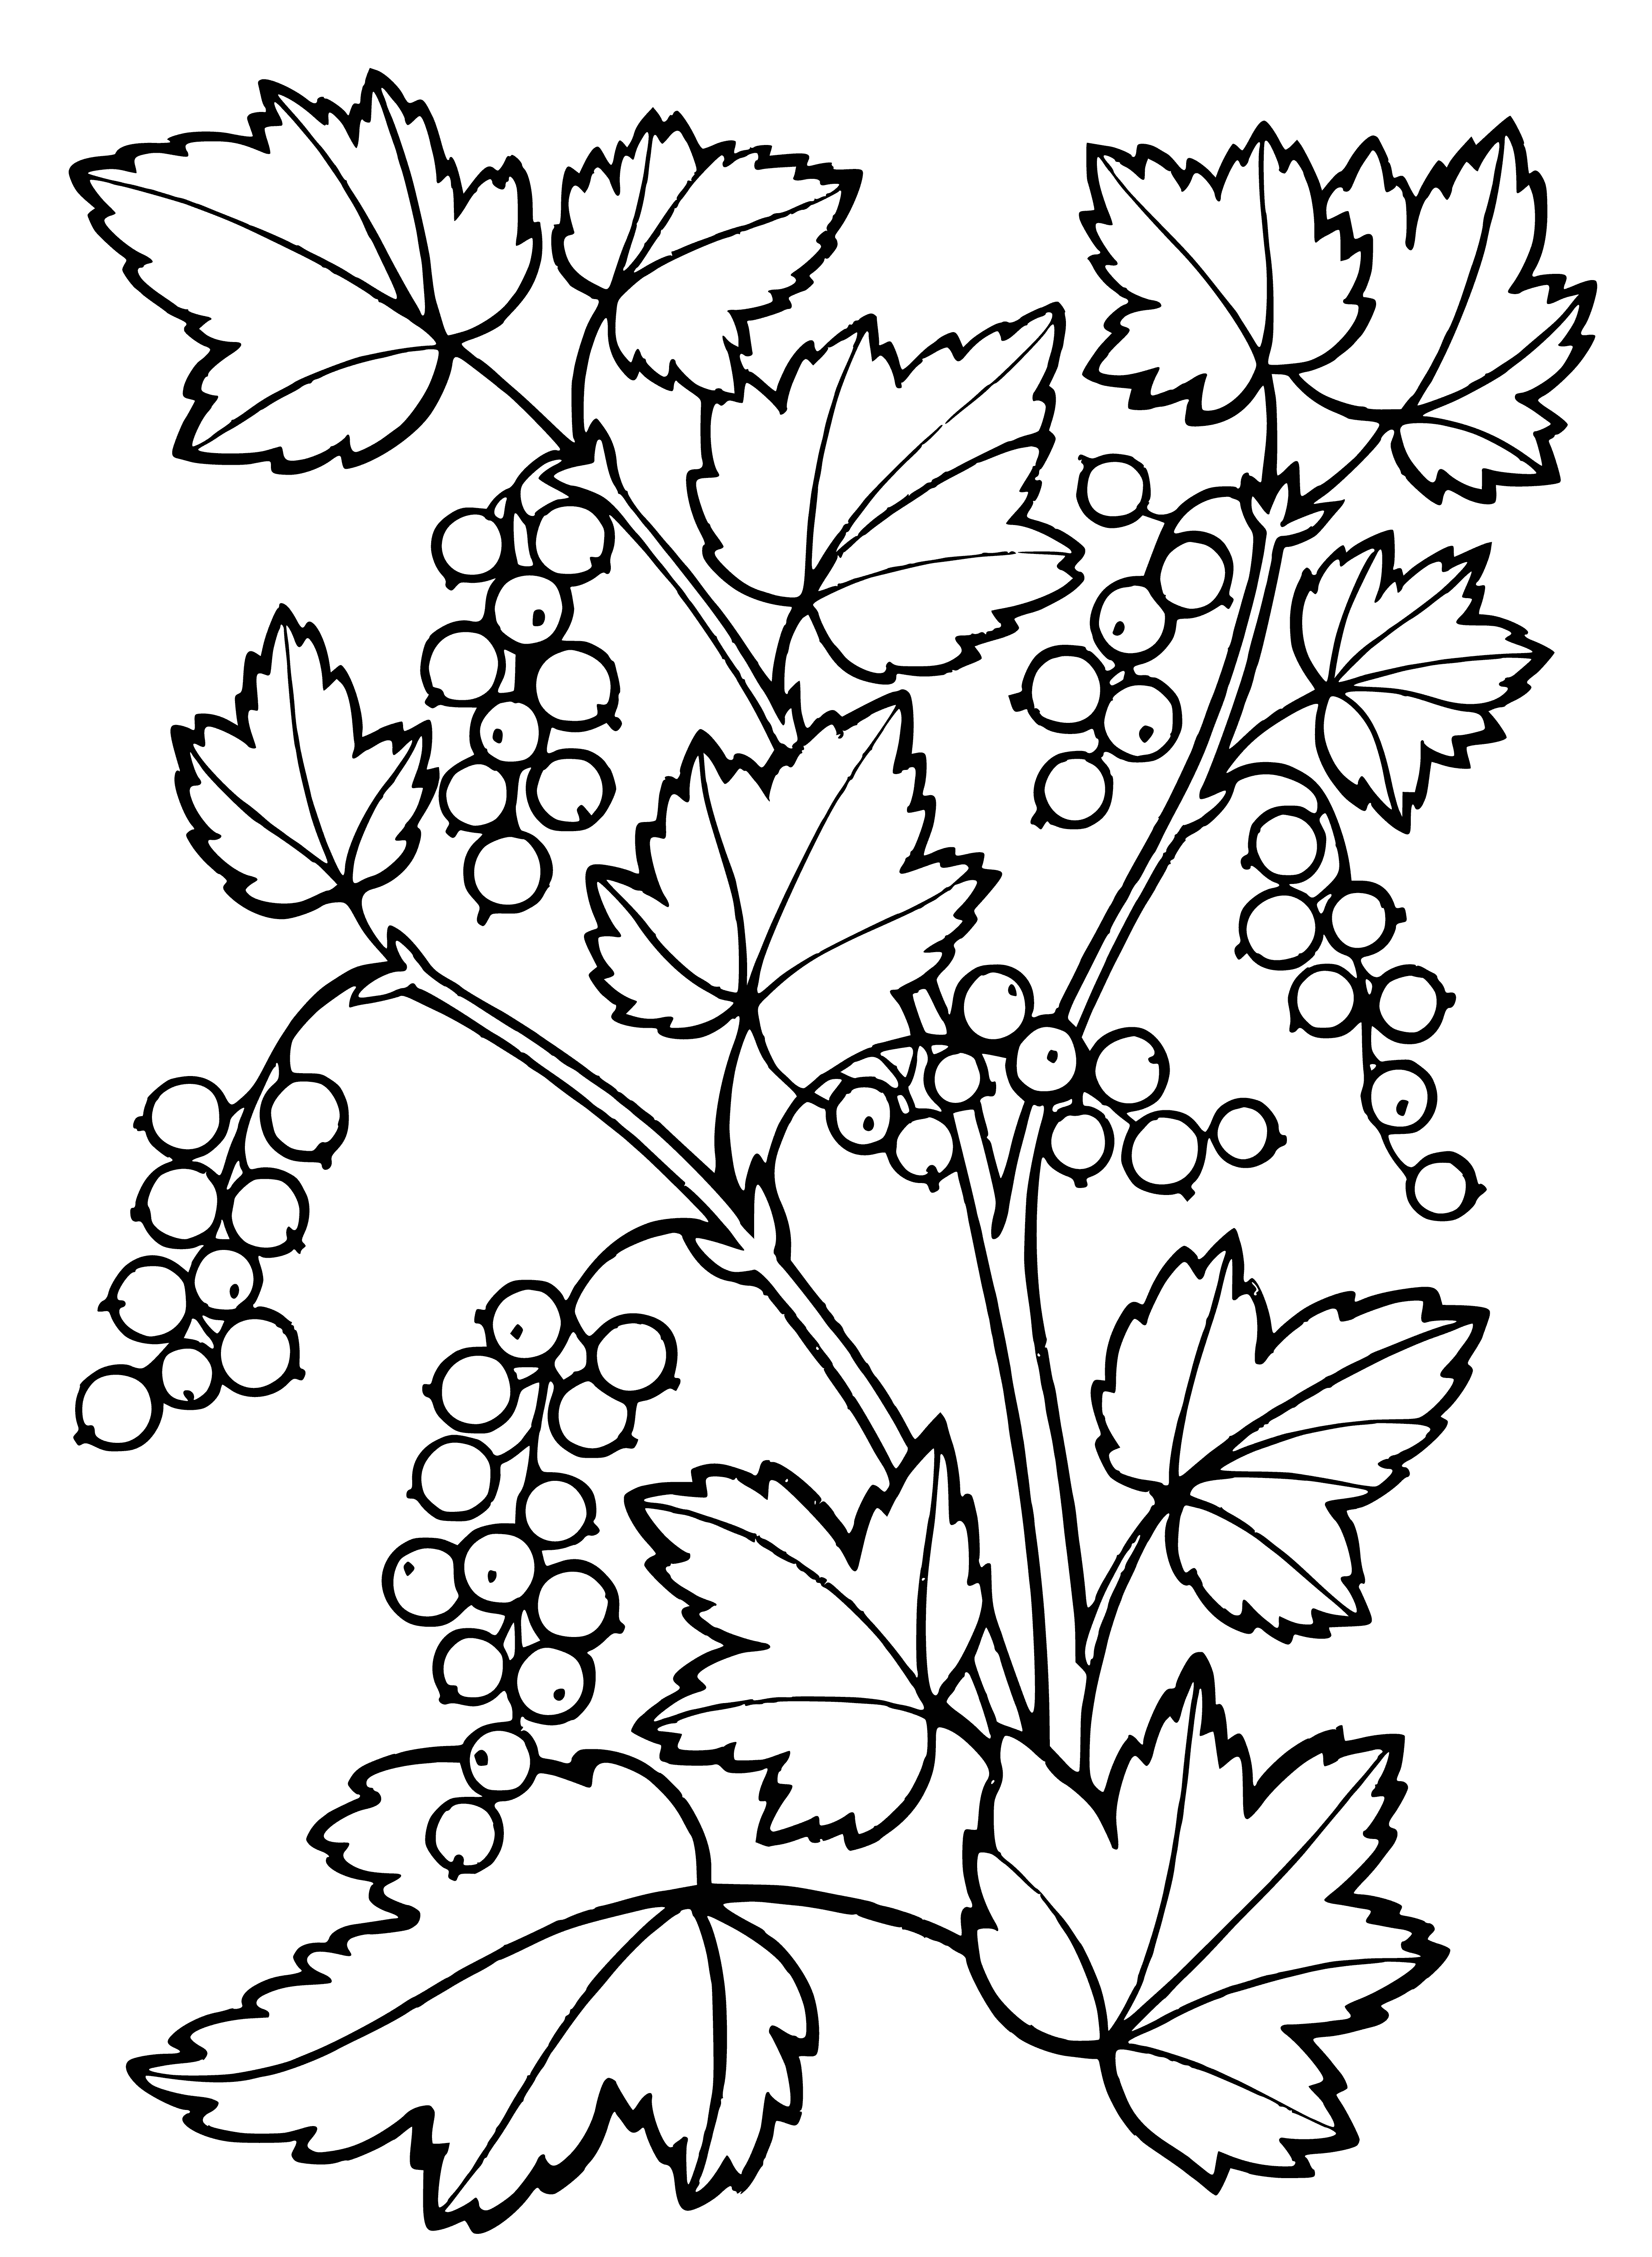 Buisson de cassis coloriage